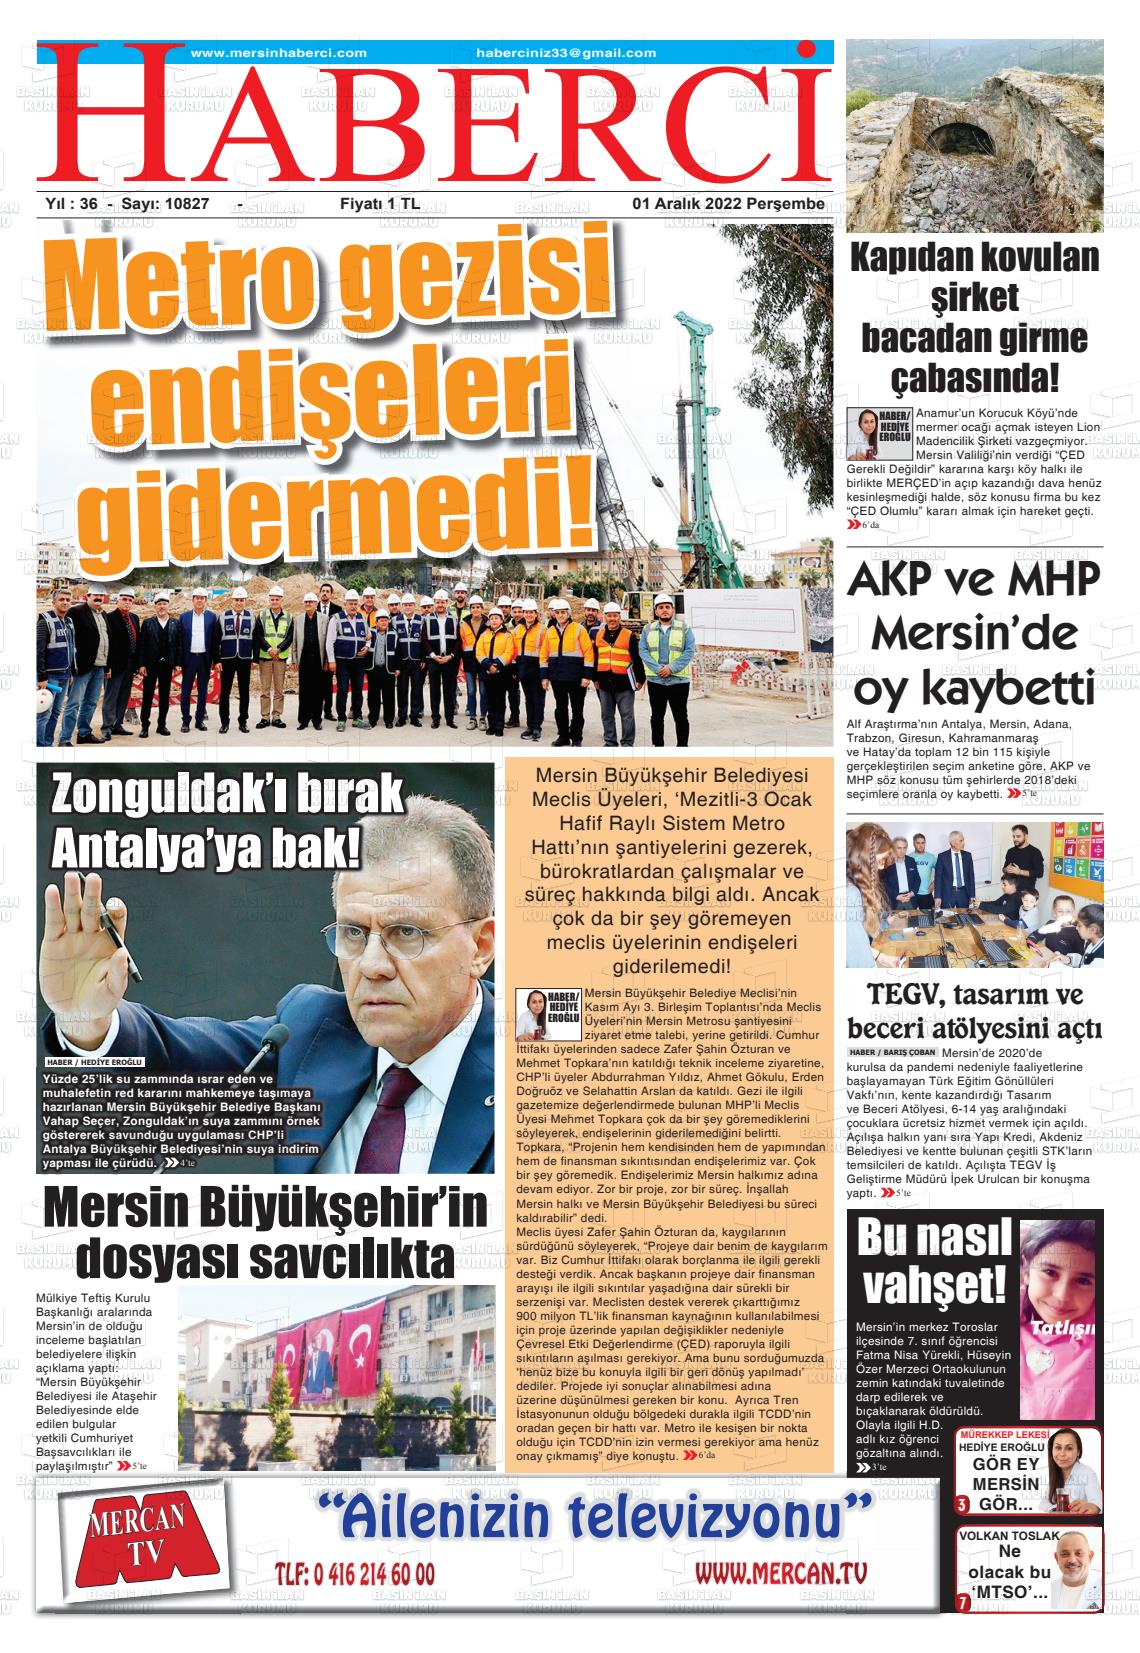 01 Aralık 2022 Mersin Haberci Gazete Manşeti